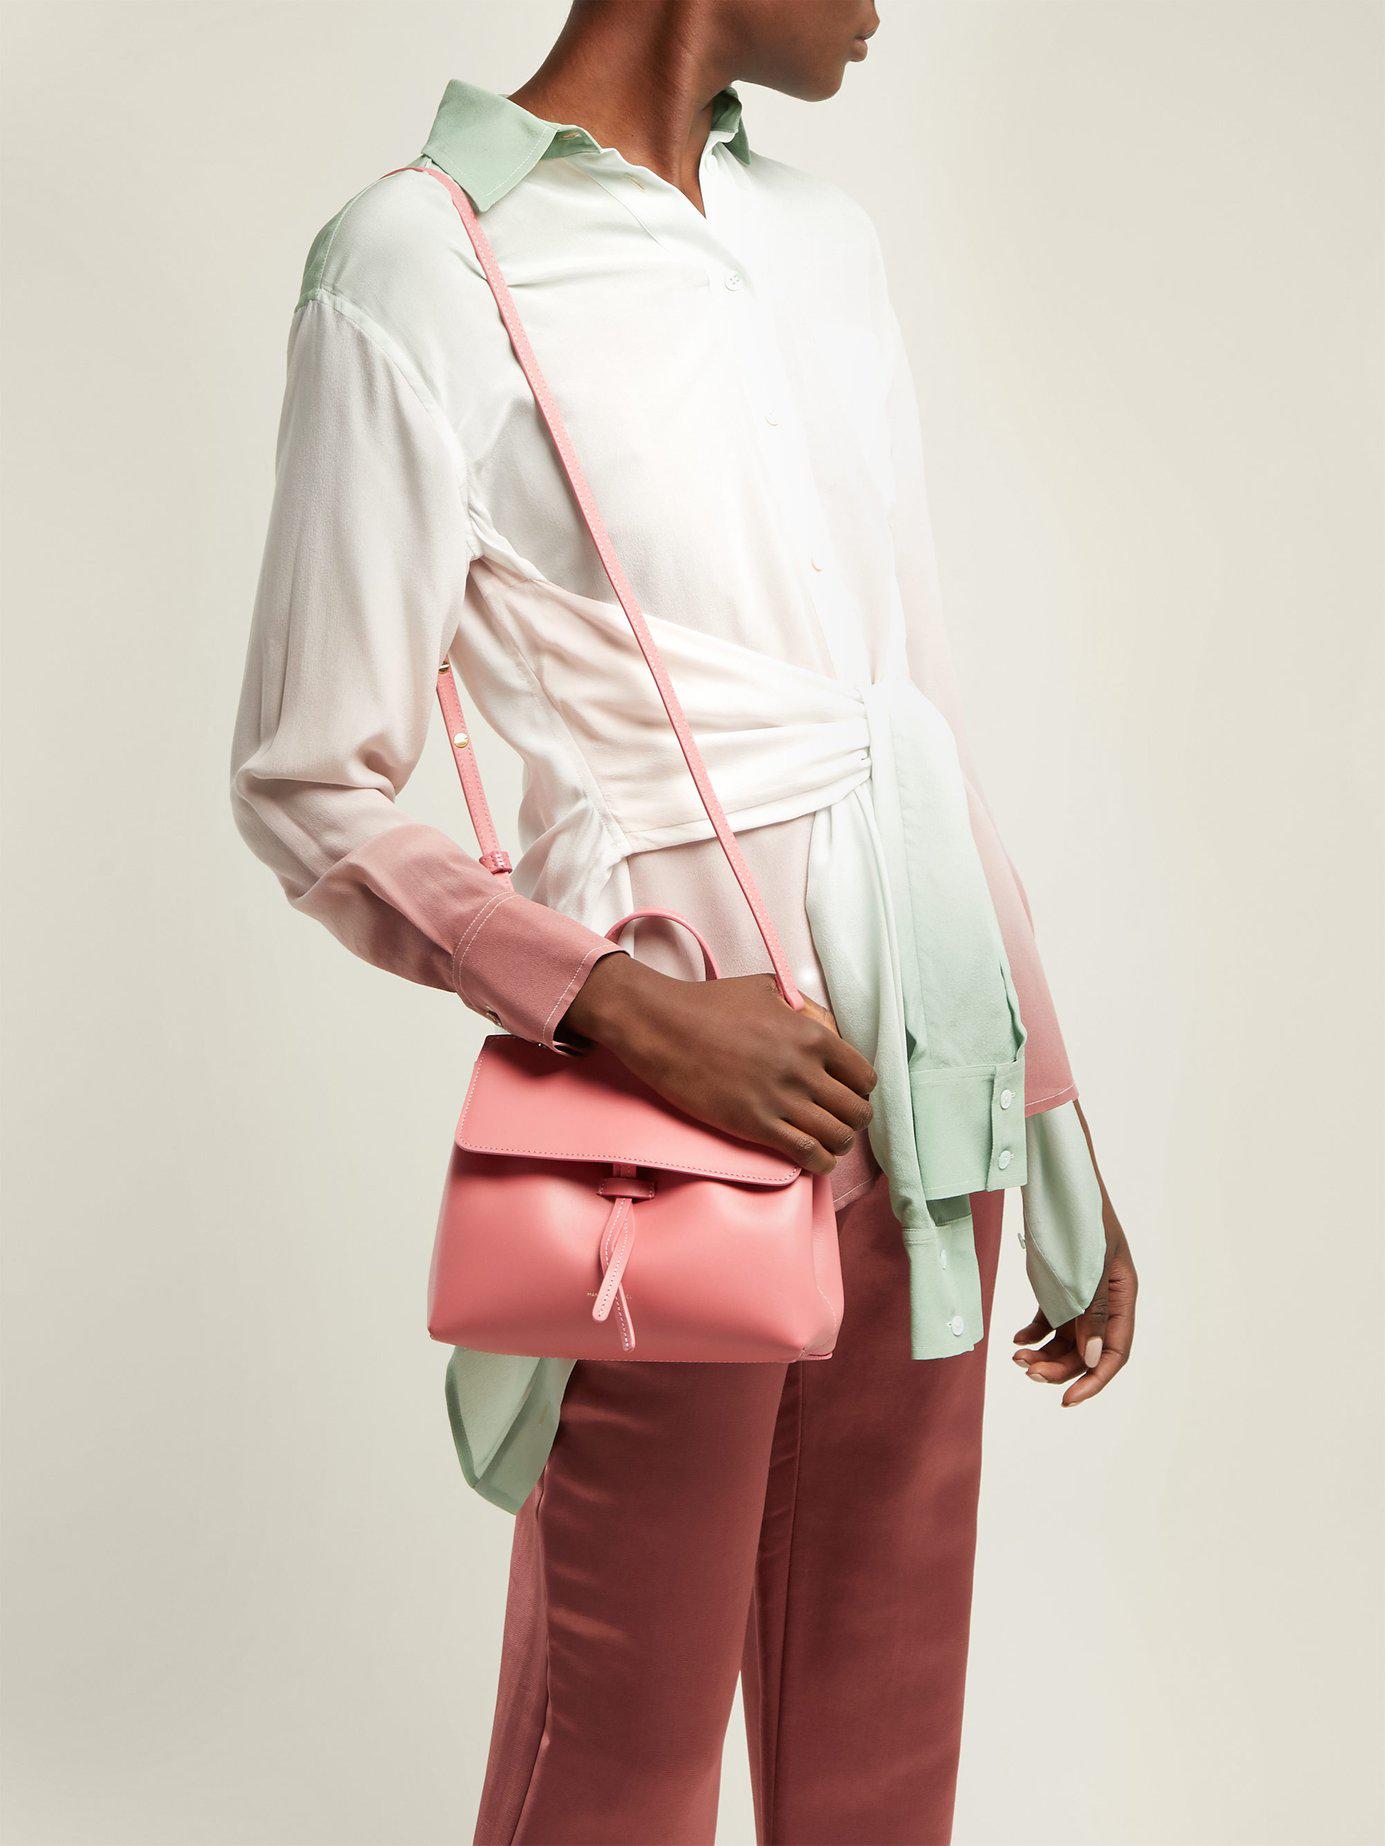 Mansur Gavriel Mini Mini Lady Bag Review - Karina Style Diaries